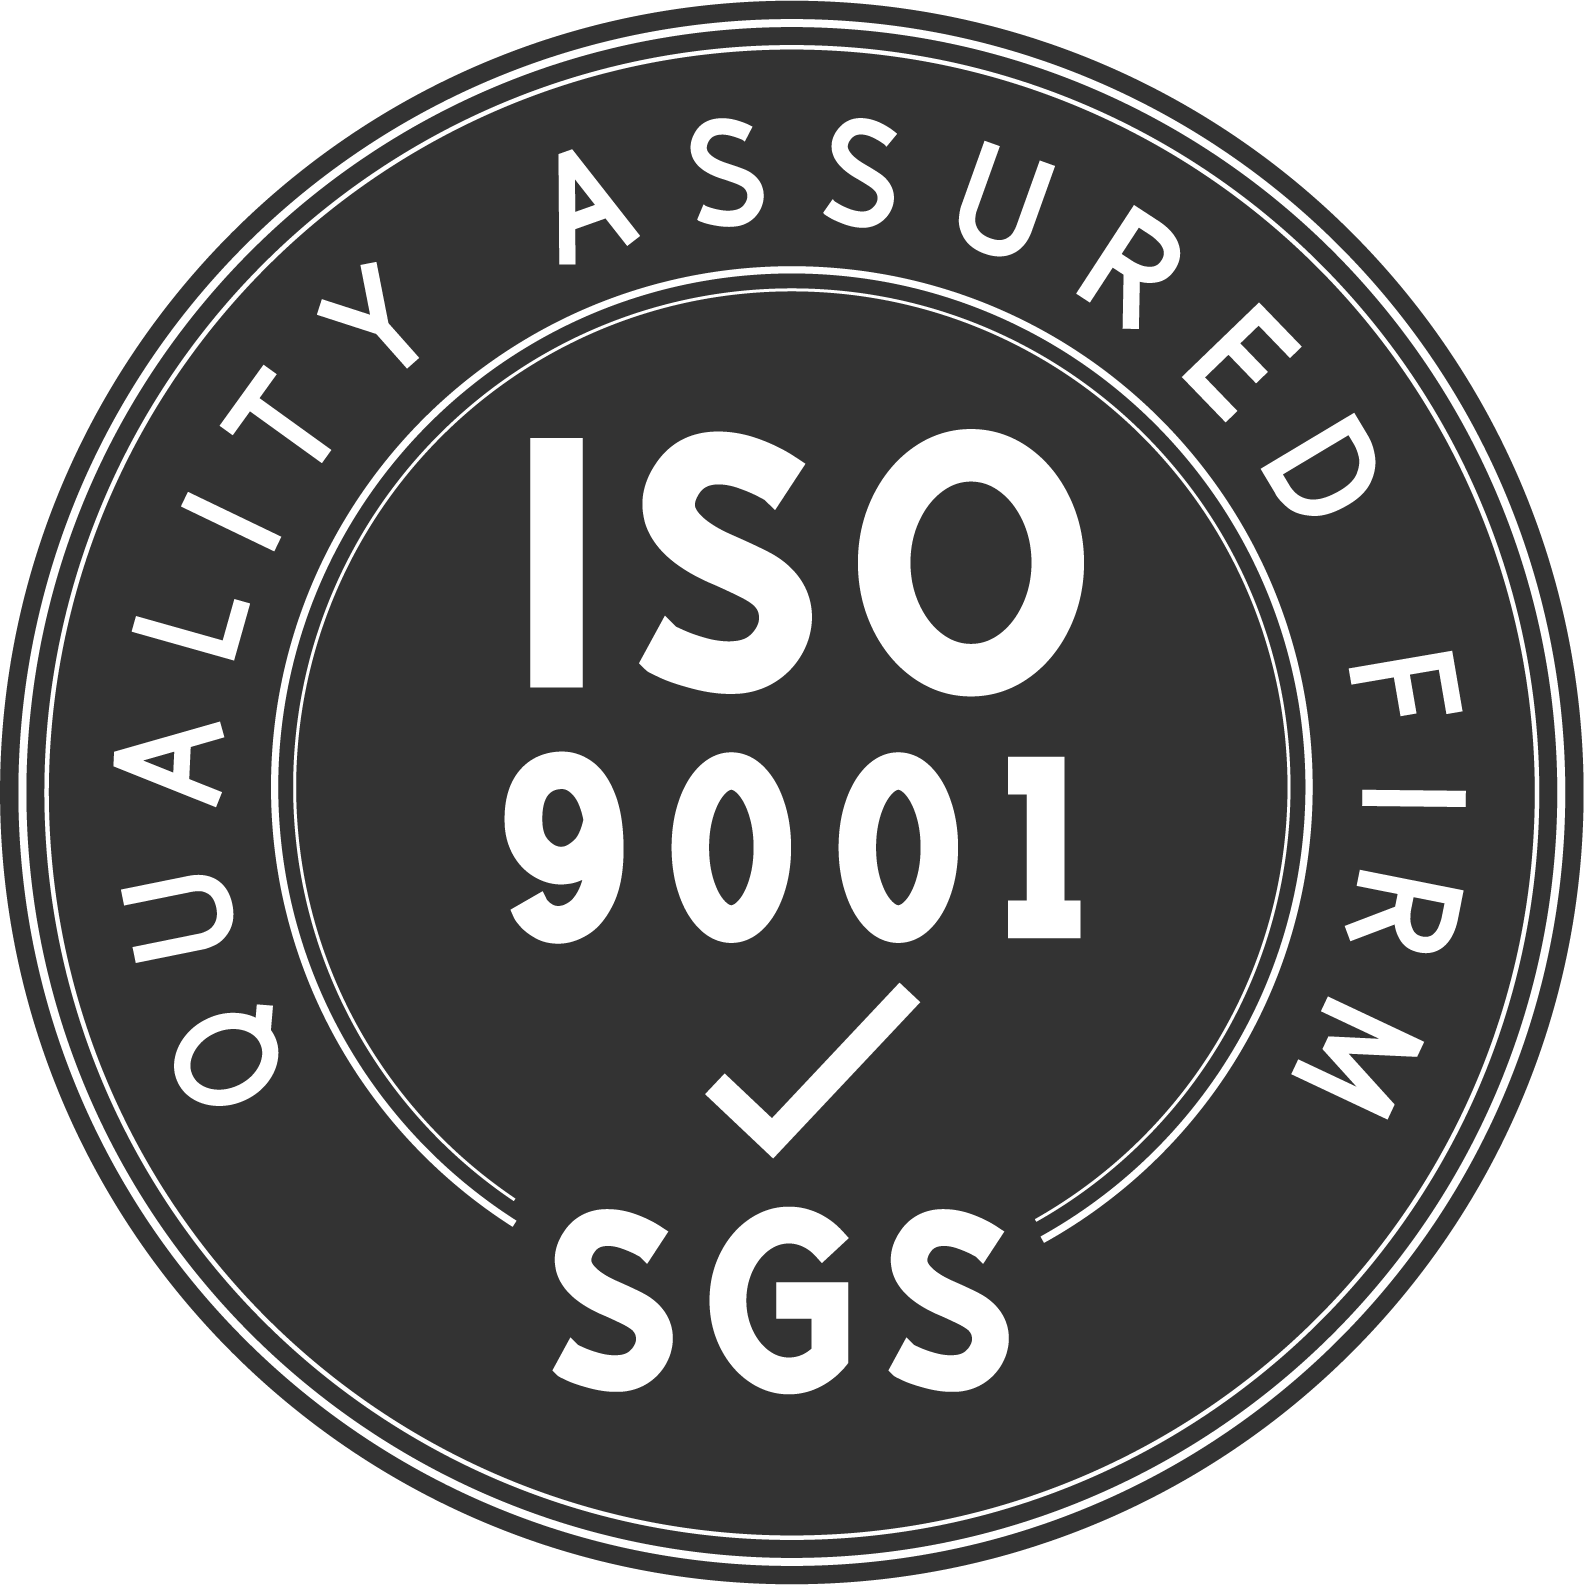 ہماری فیکٹری ISO9001: 2005 اعلی معیار کی مصنوعات کی مصدقہ صنعت کار ہے۔